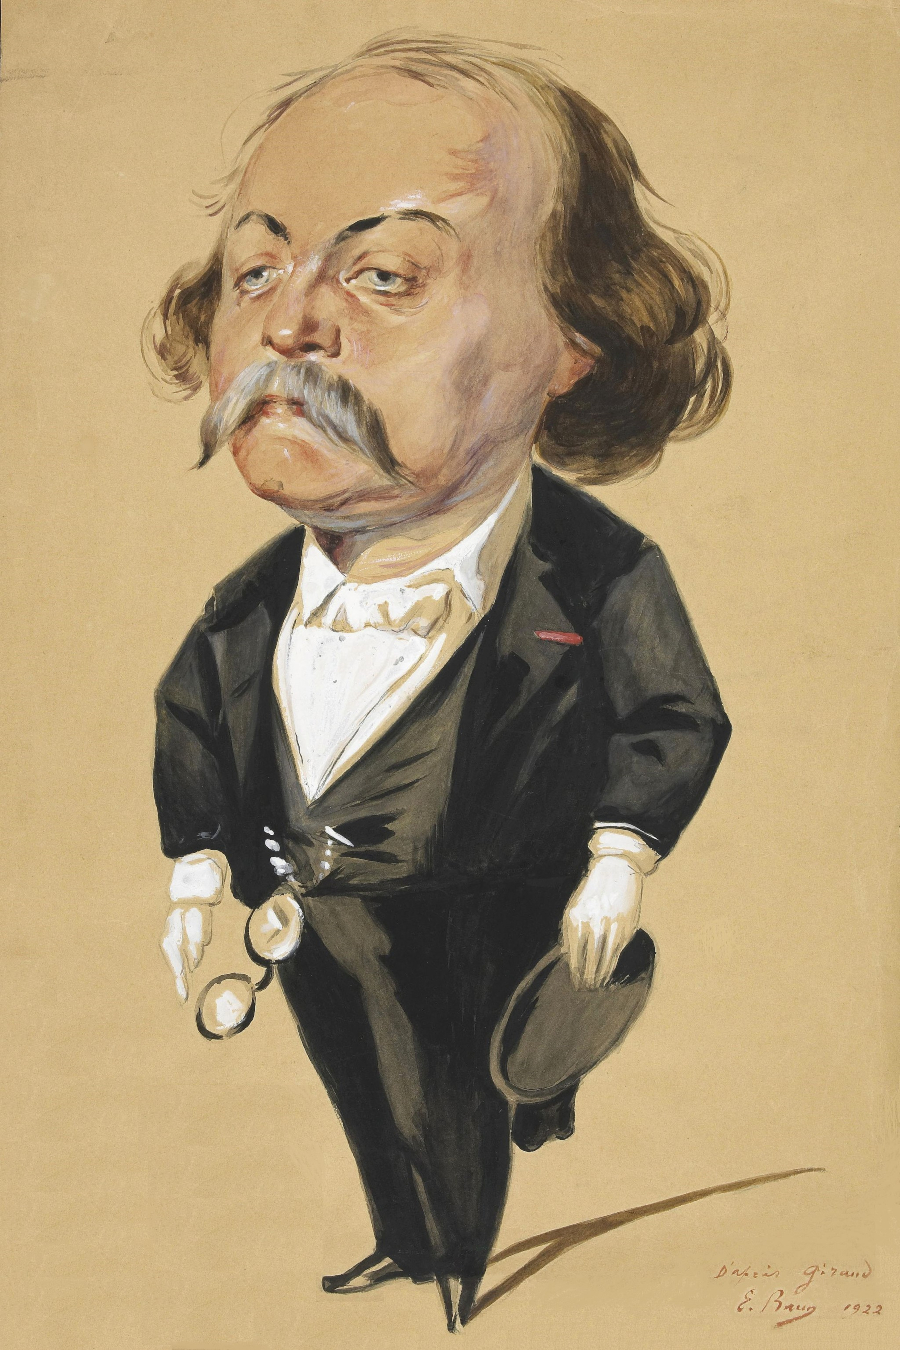 Gustave Flaubert par E. Brun (1922), copie d'une caricature réalisée par Pierre François Eugène Giraud vers 1868.